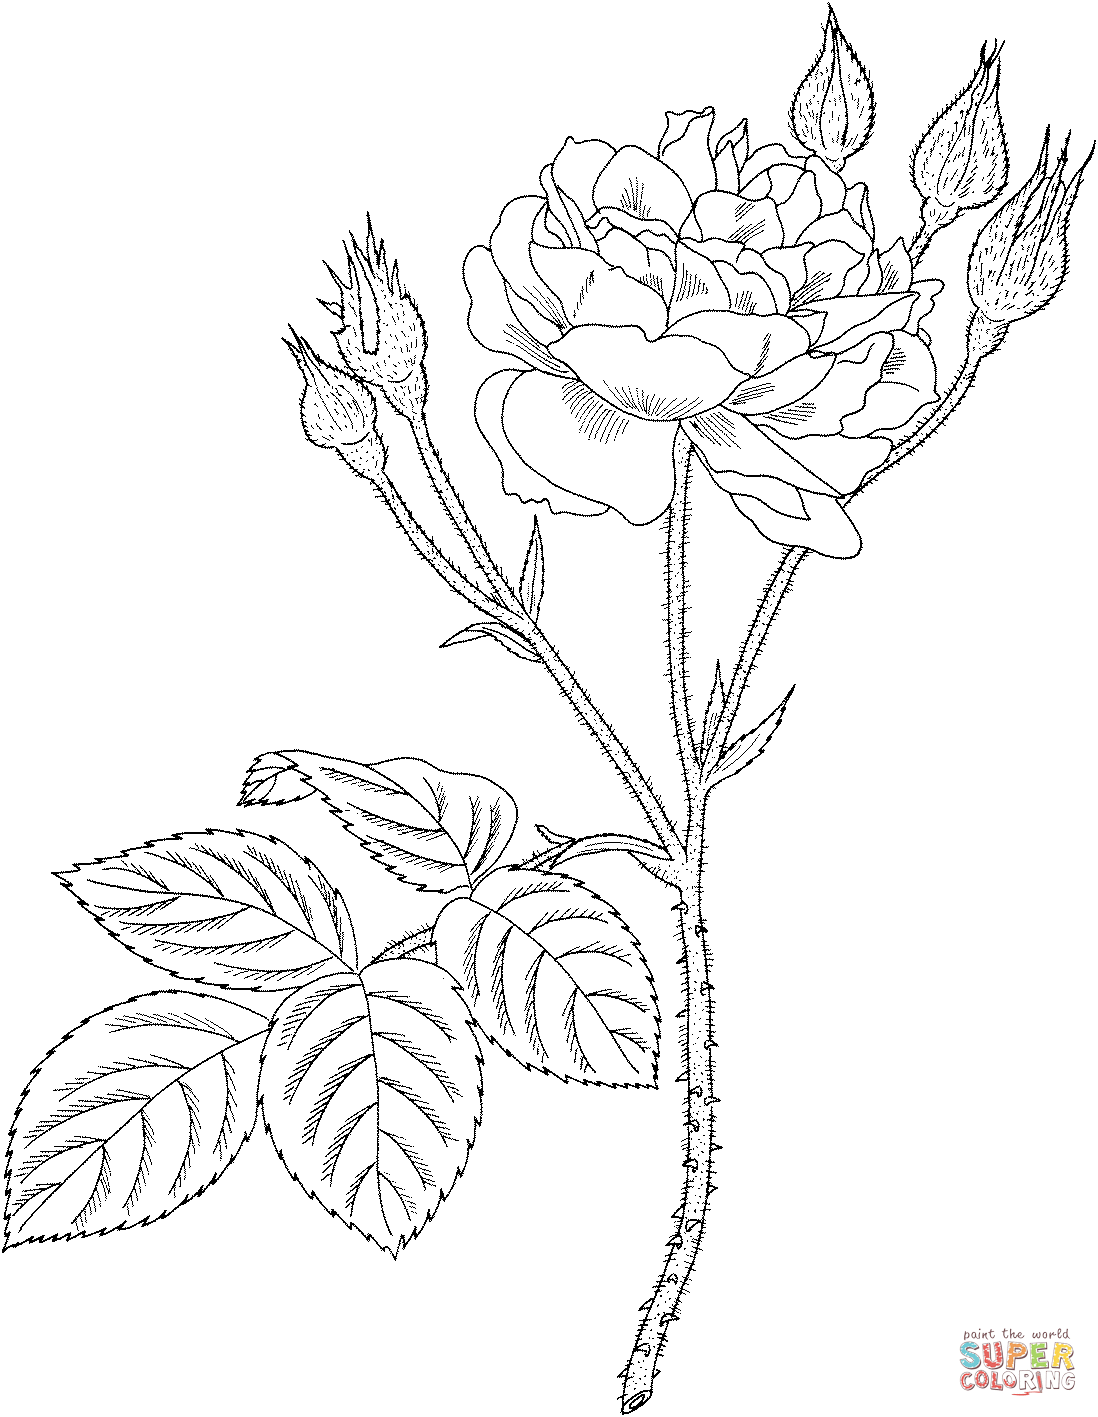 康尼斯或普通苔藓或玫瑰中的老粉红苔藓玫瑰